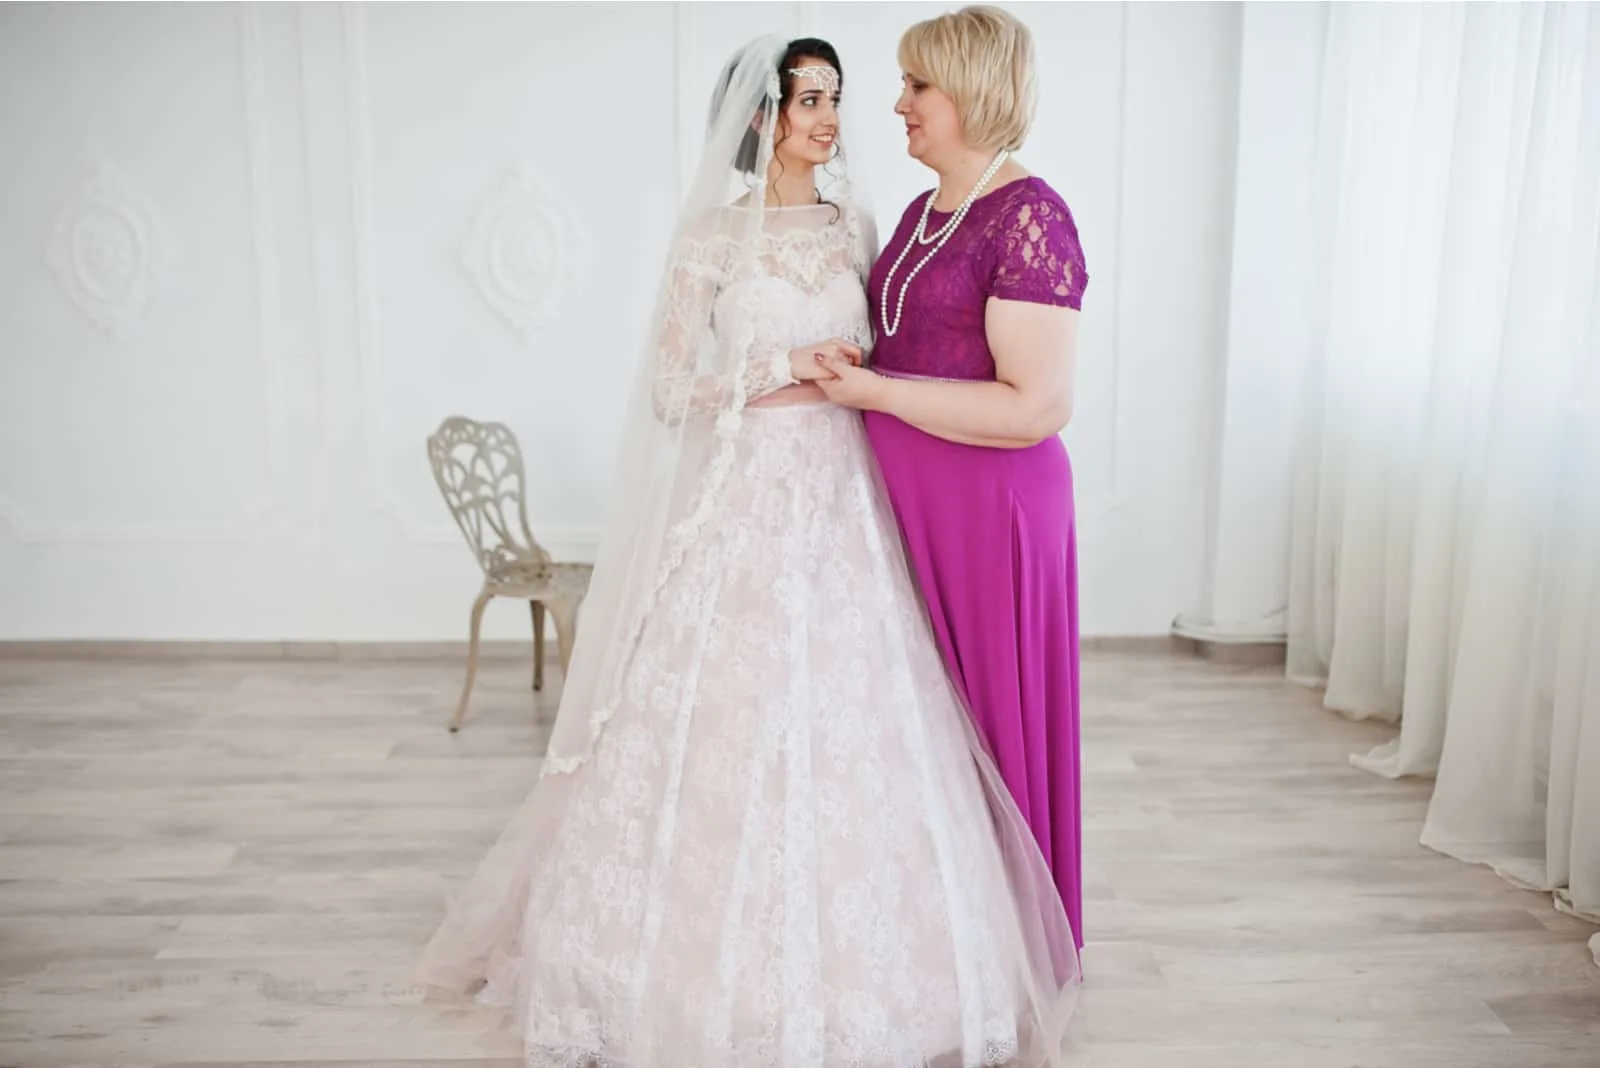 Schöne Braut im Hochzeitskleid posiert mit ihrer Mutter im lila langen Kleid.